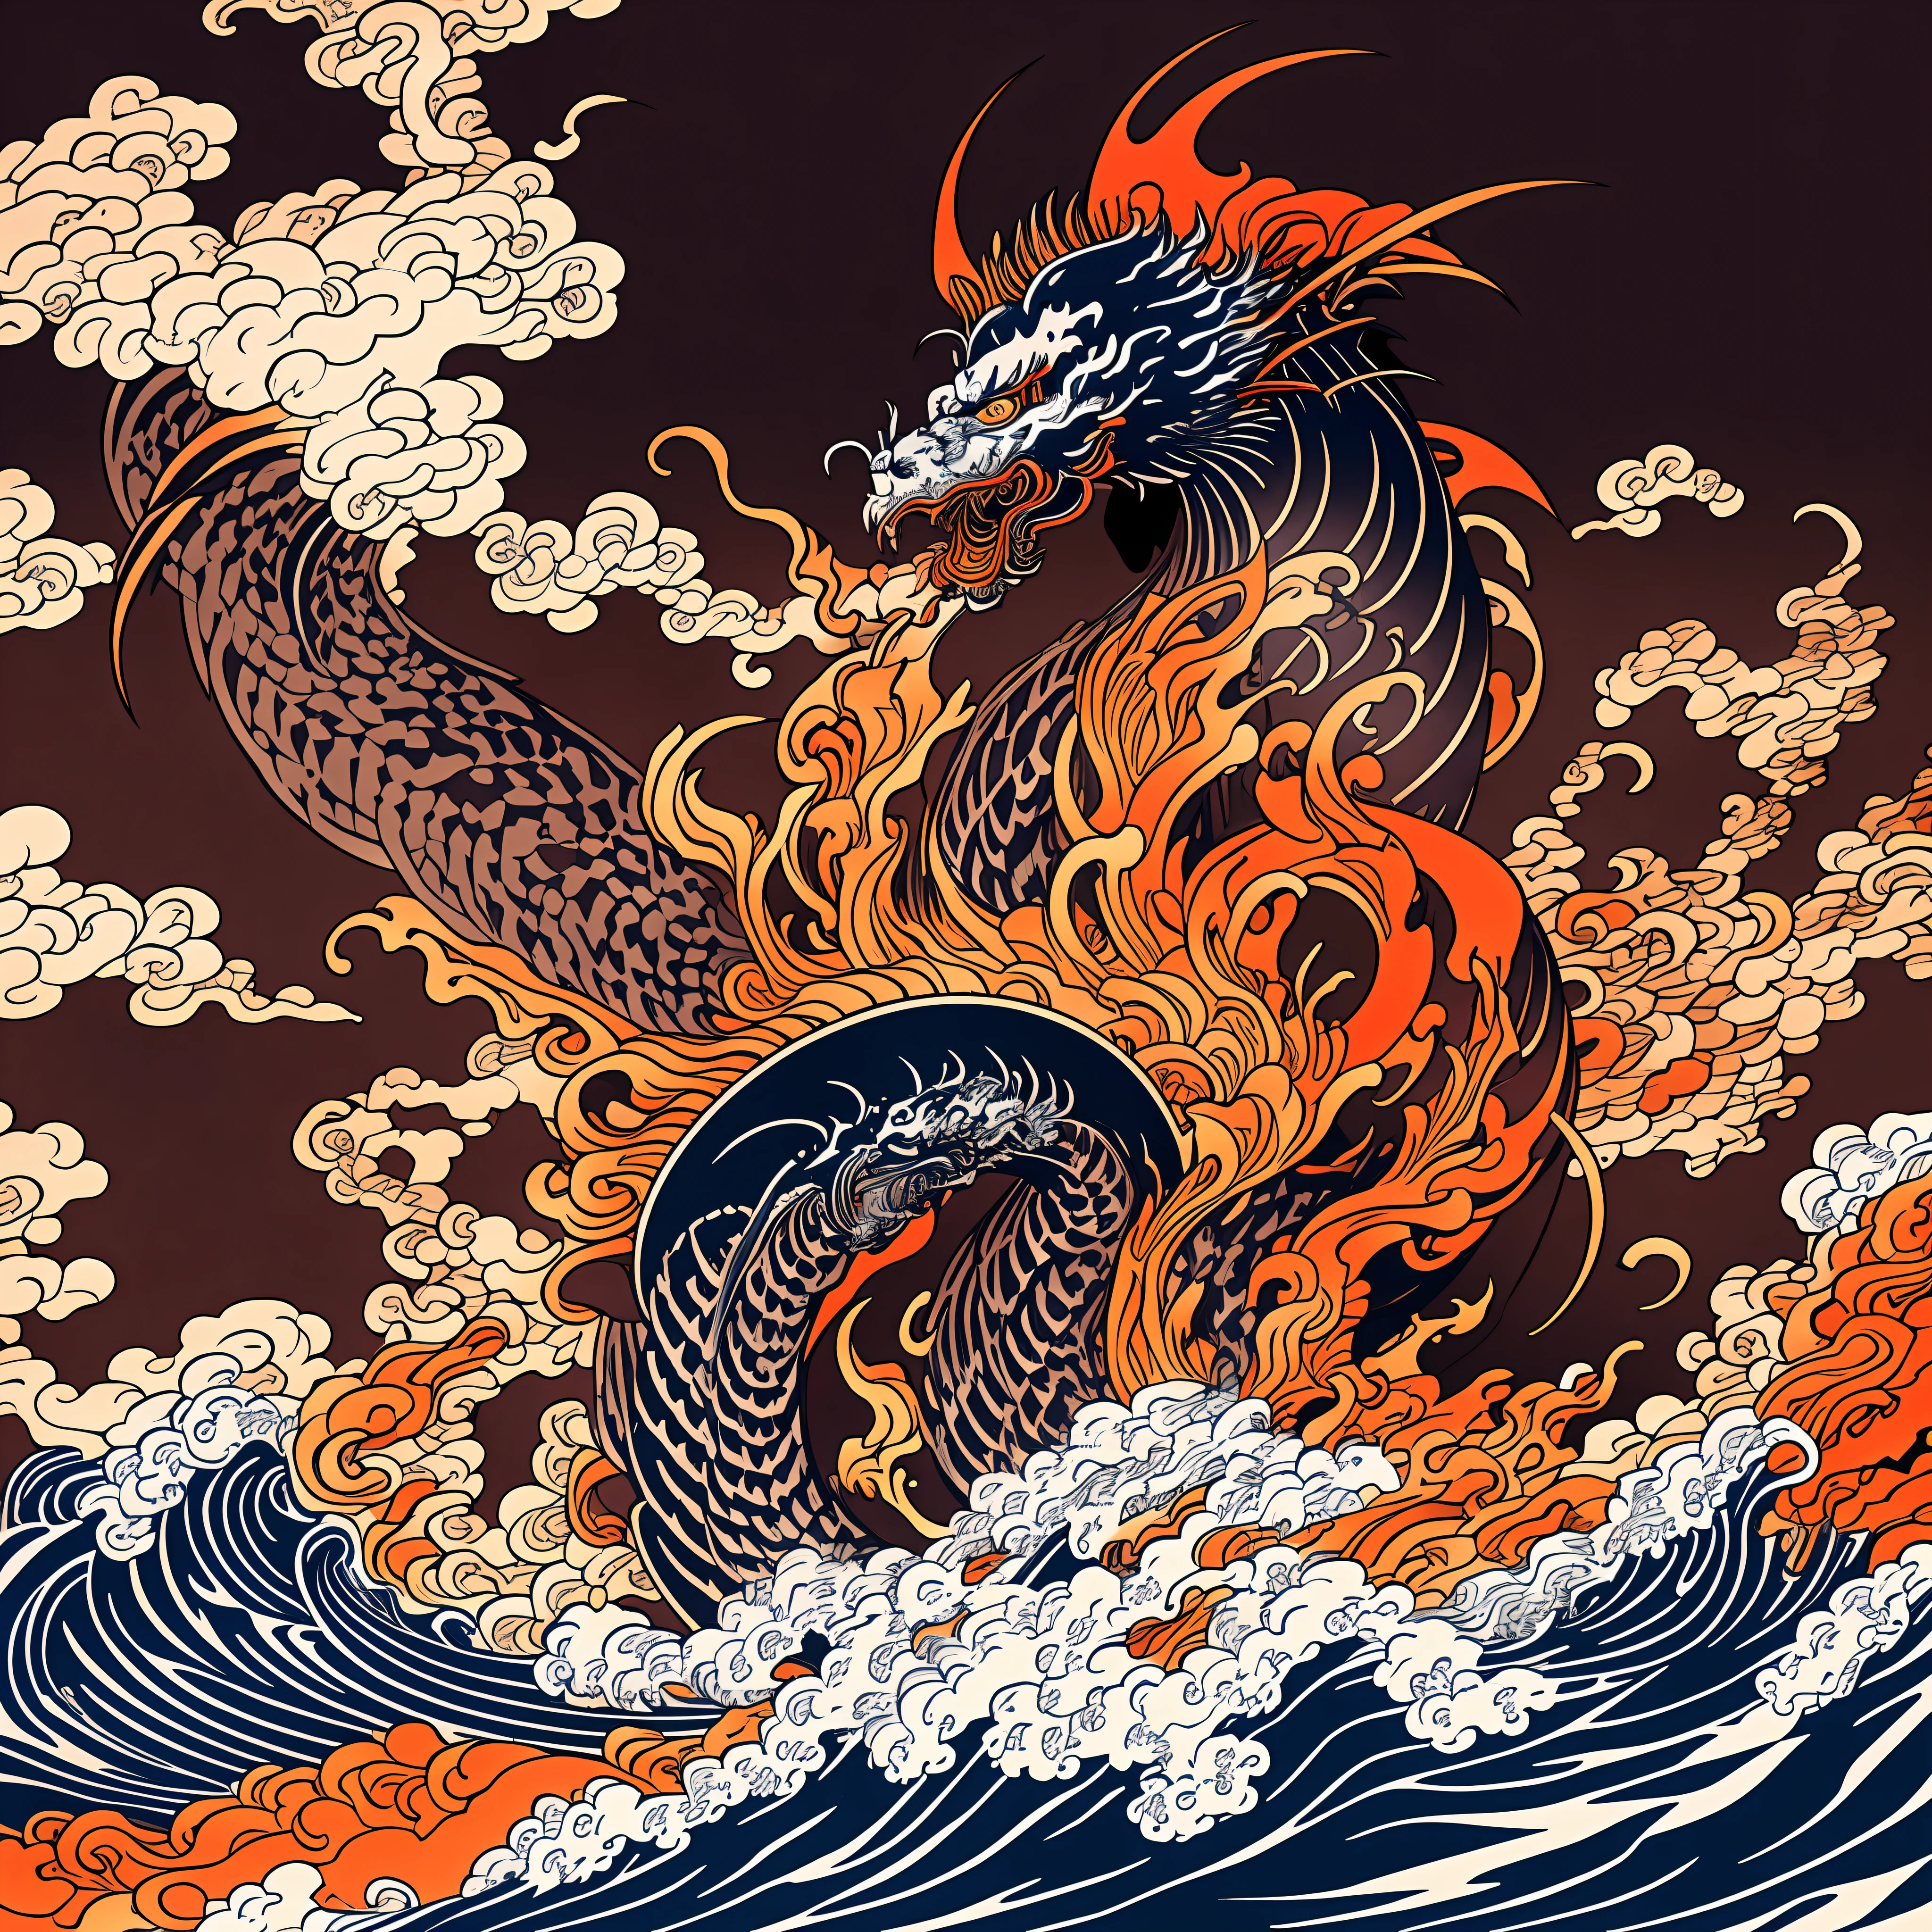 Diseño de arte lineal estilo Katsushika Hokusai, Rojo oscuro estilo Hokusai, Diseño de patrón de llama bermellón. Dragón en forma de llama gigante, en la mejor calidad, masterpiece high resolution estilo ukiyo-e. estilo artístico, 1:1, estilo ukiyo-e, 3D vector art, Ilustrador Adobe, resolución 4k, Solo fondos magníficos